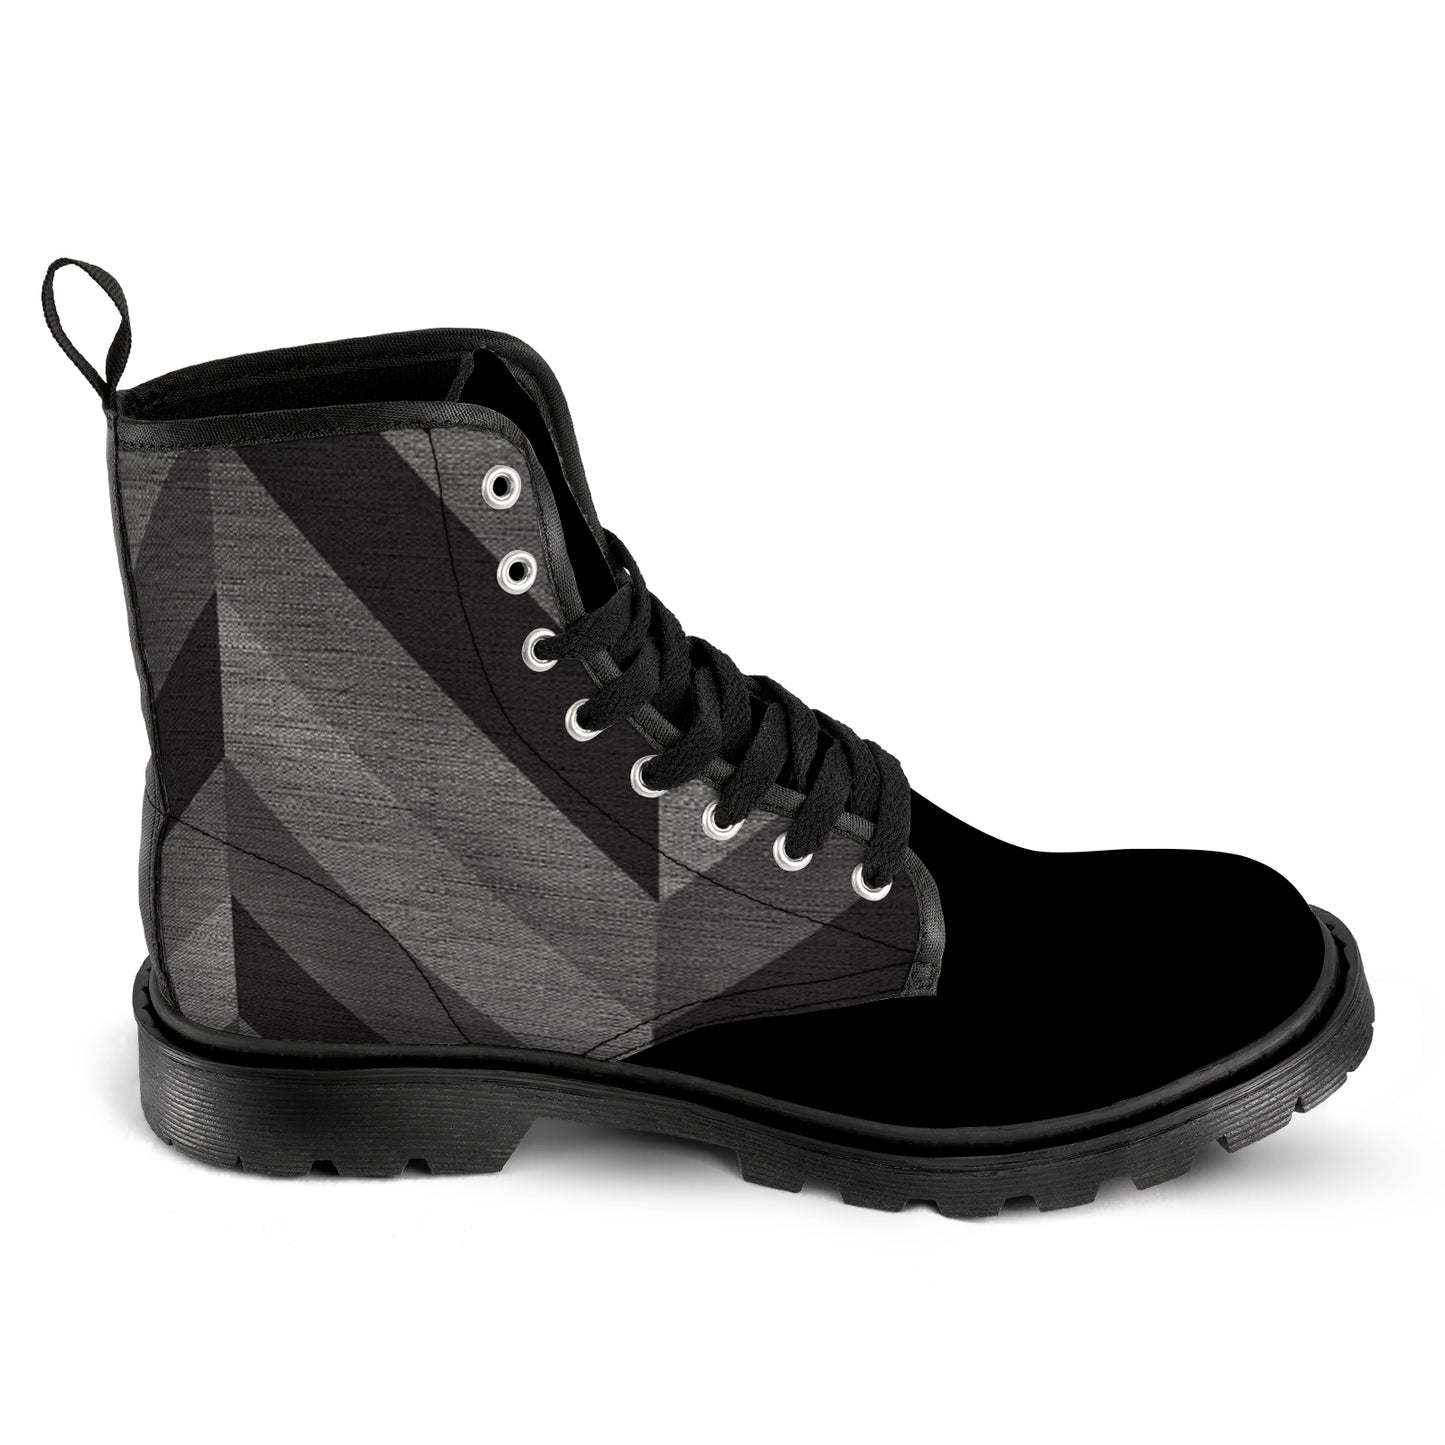 Men's Lace Up Canvas Boots - Grey/Black